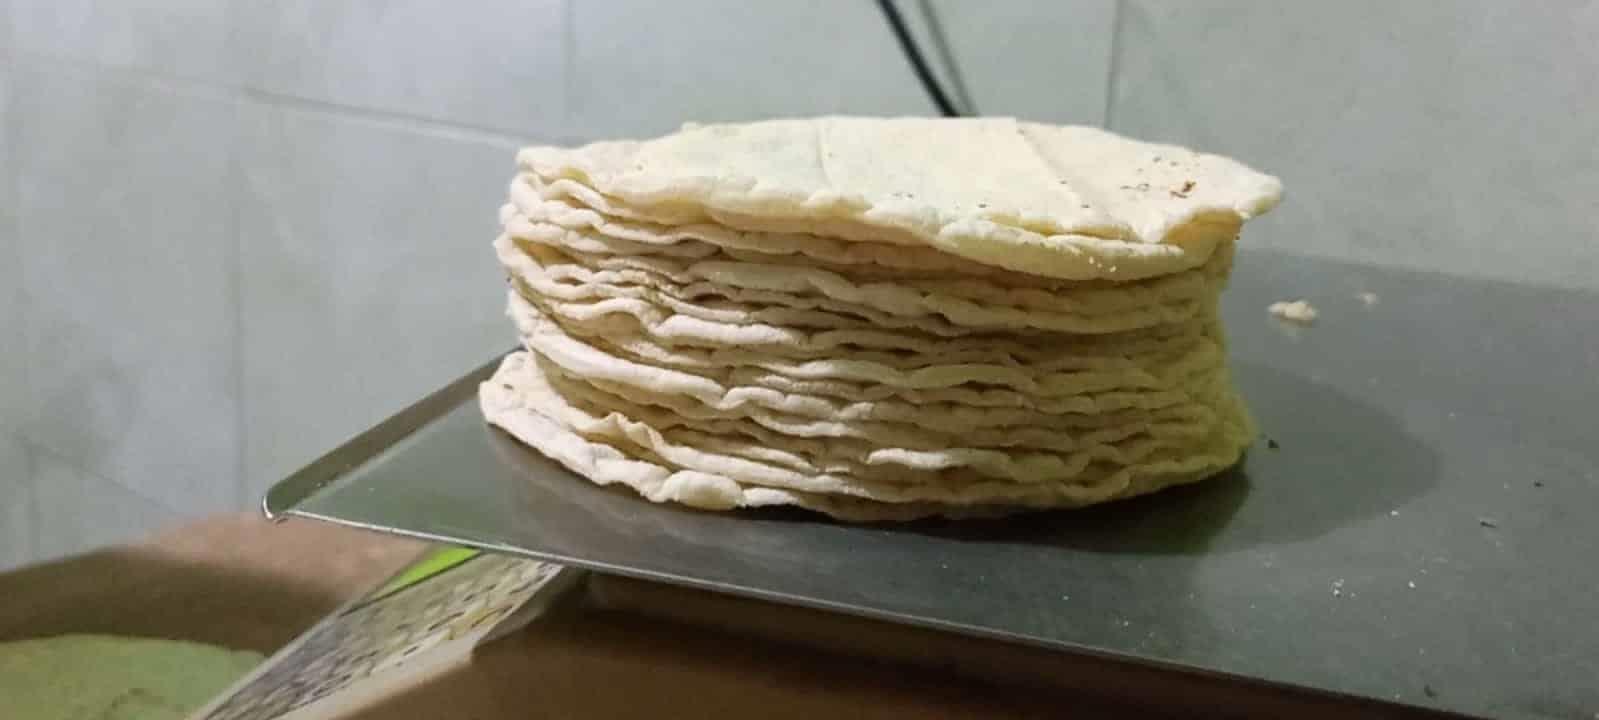 El kilo de tortilla podría alcanzar los 24 pesos en el sur de Veracruz